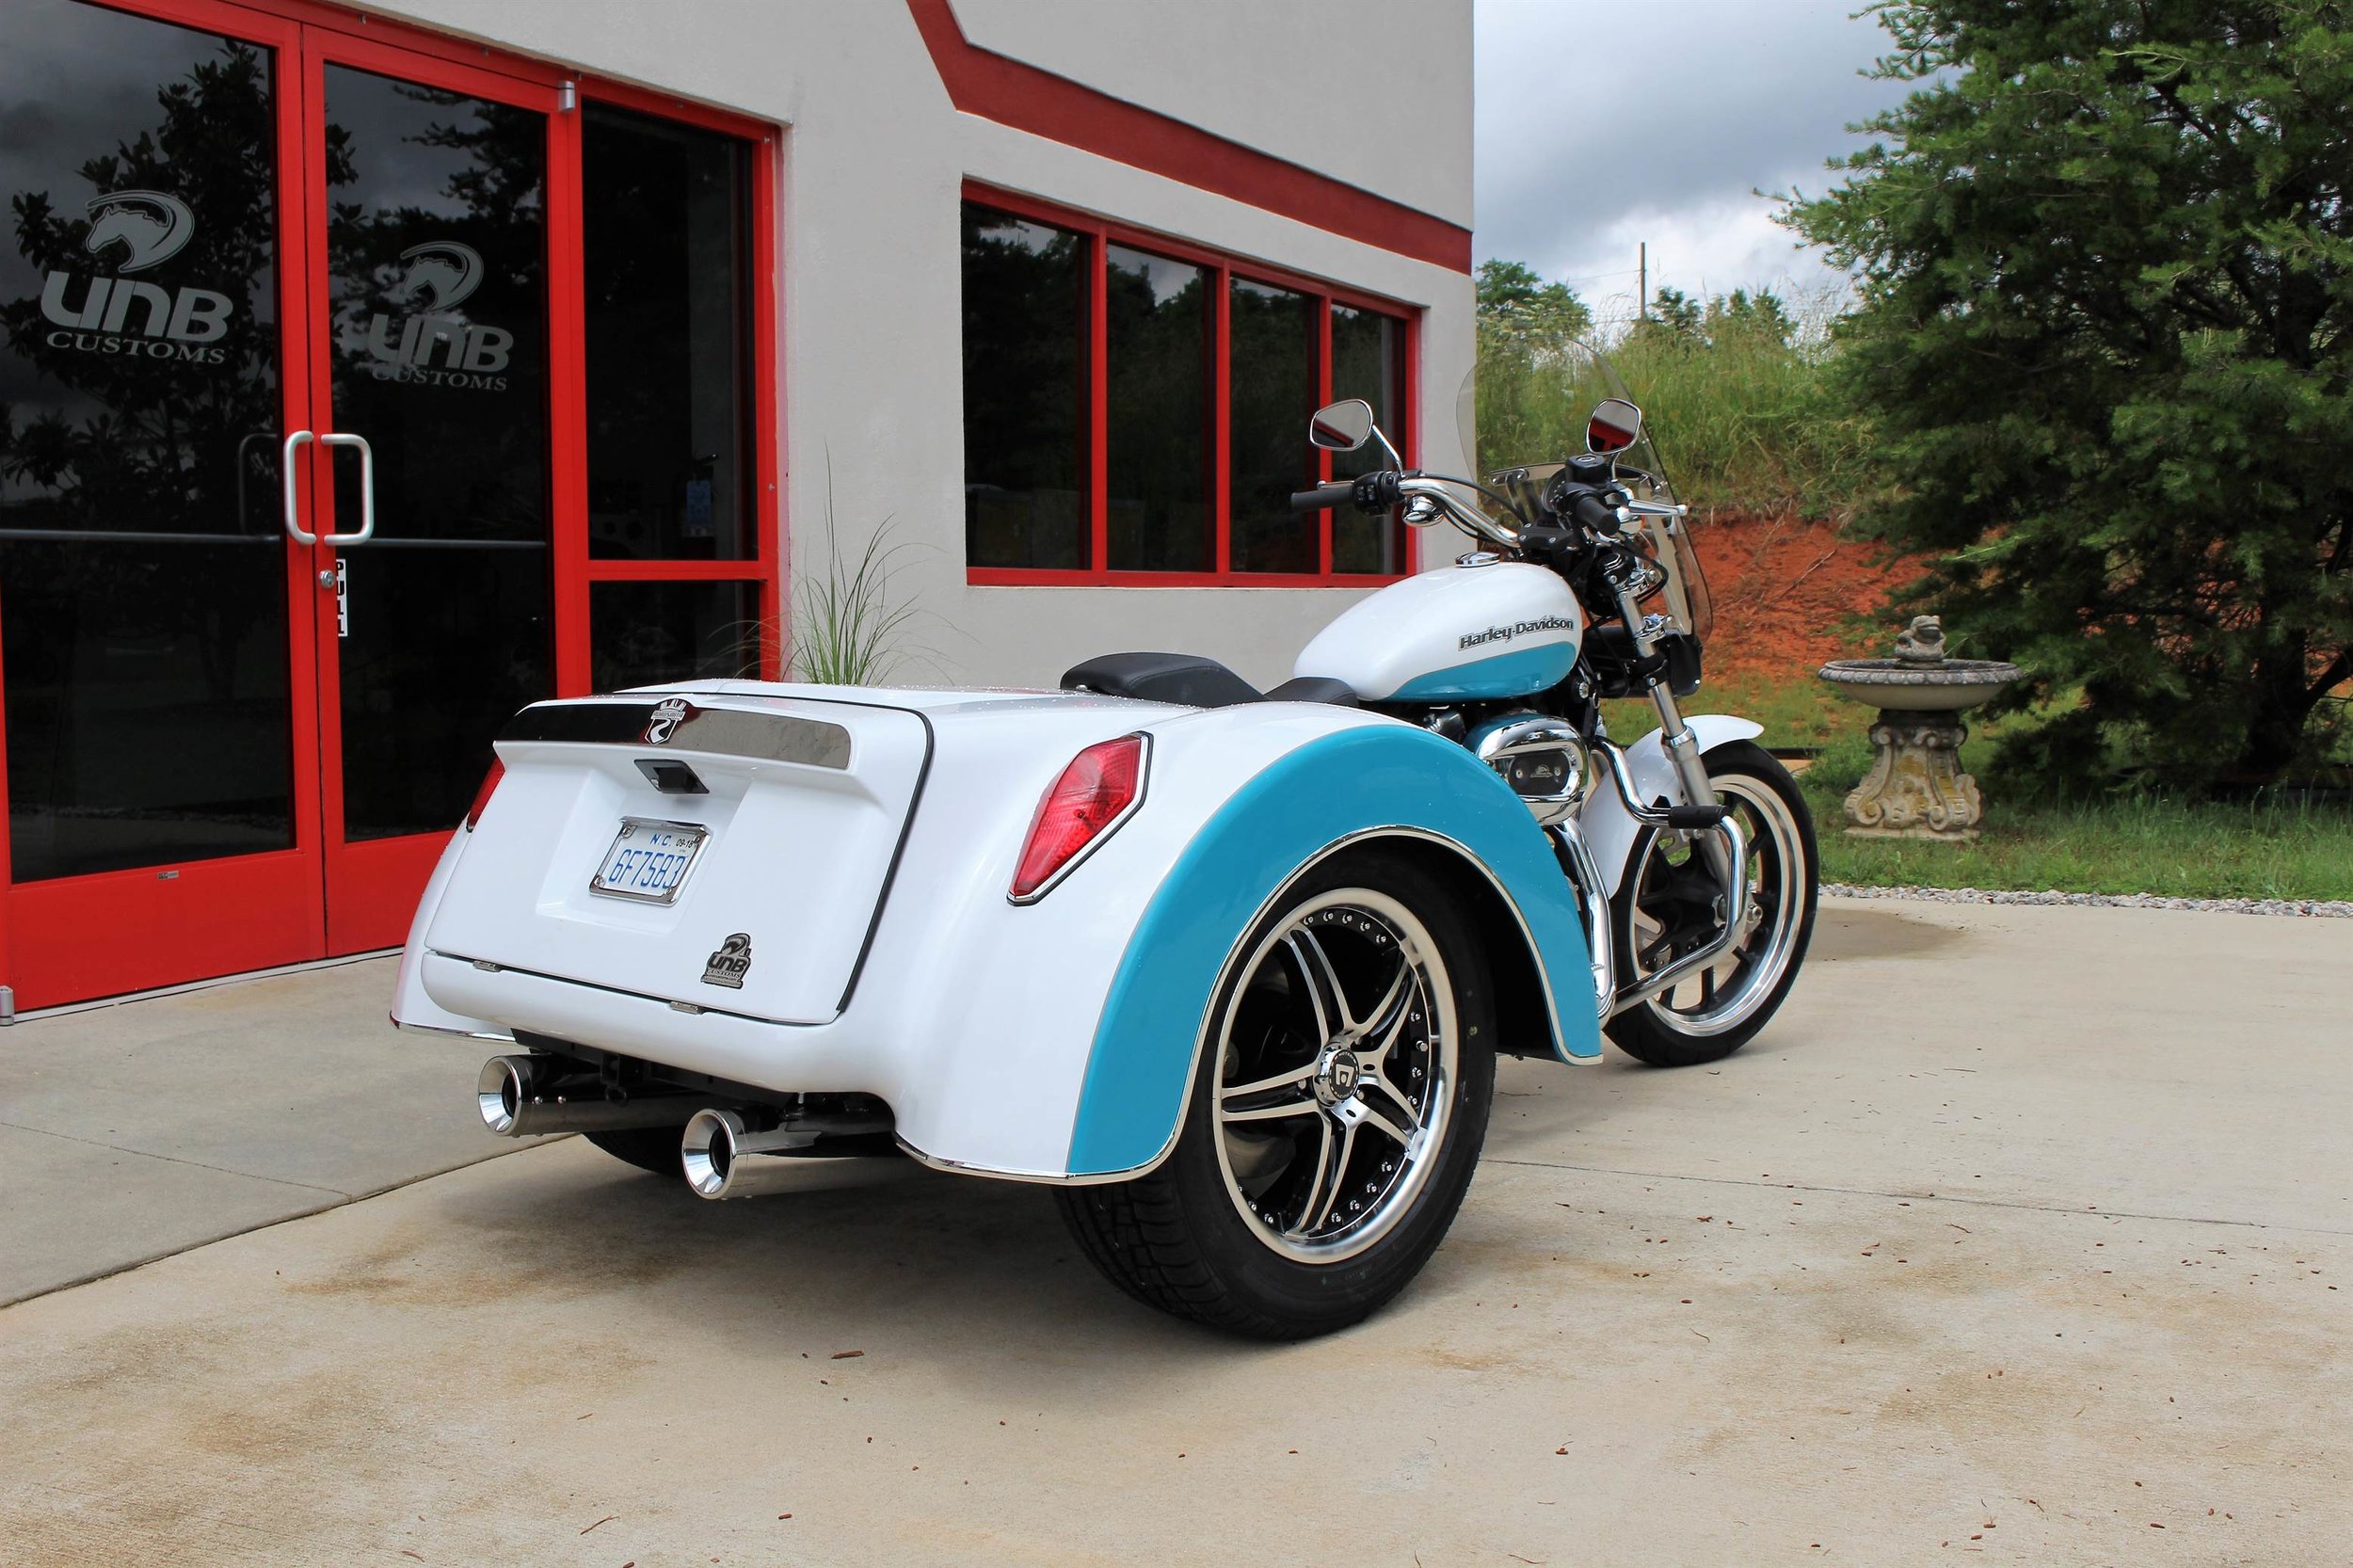 HD Sportster Roadsmith trike rear